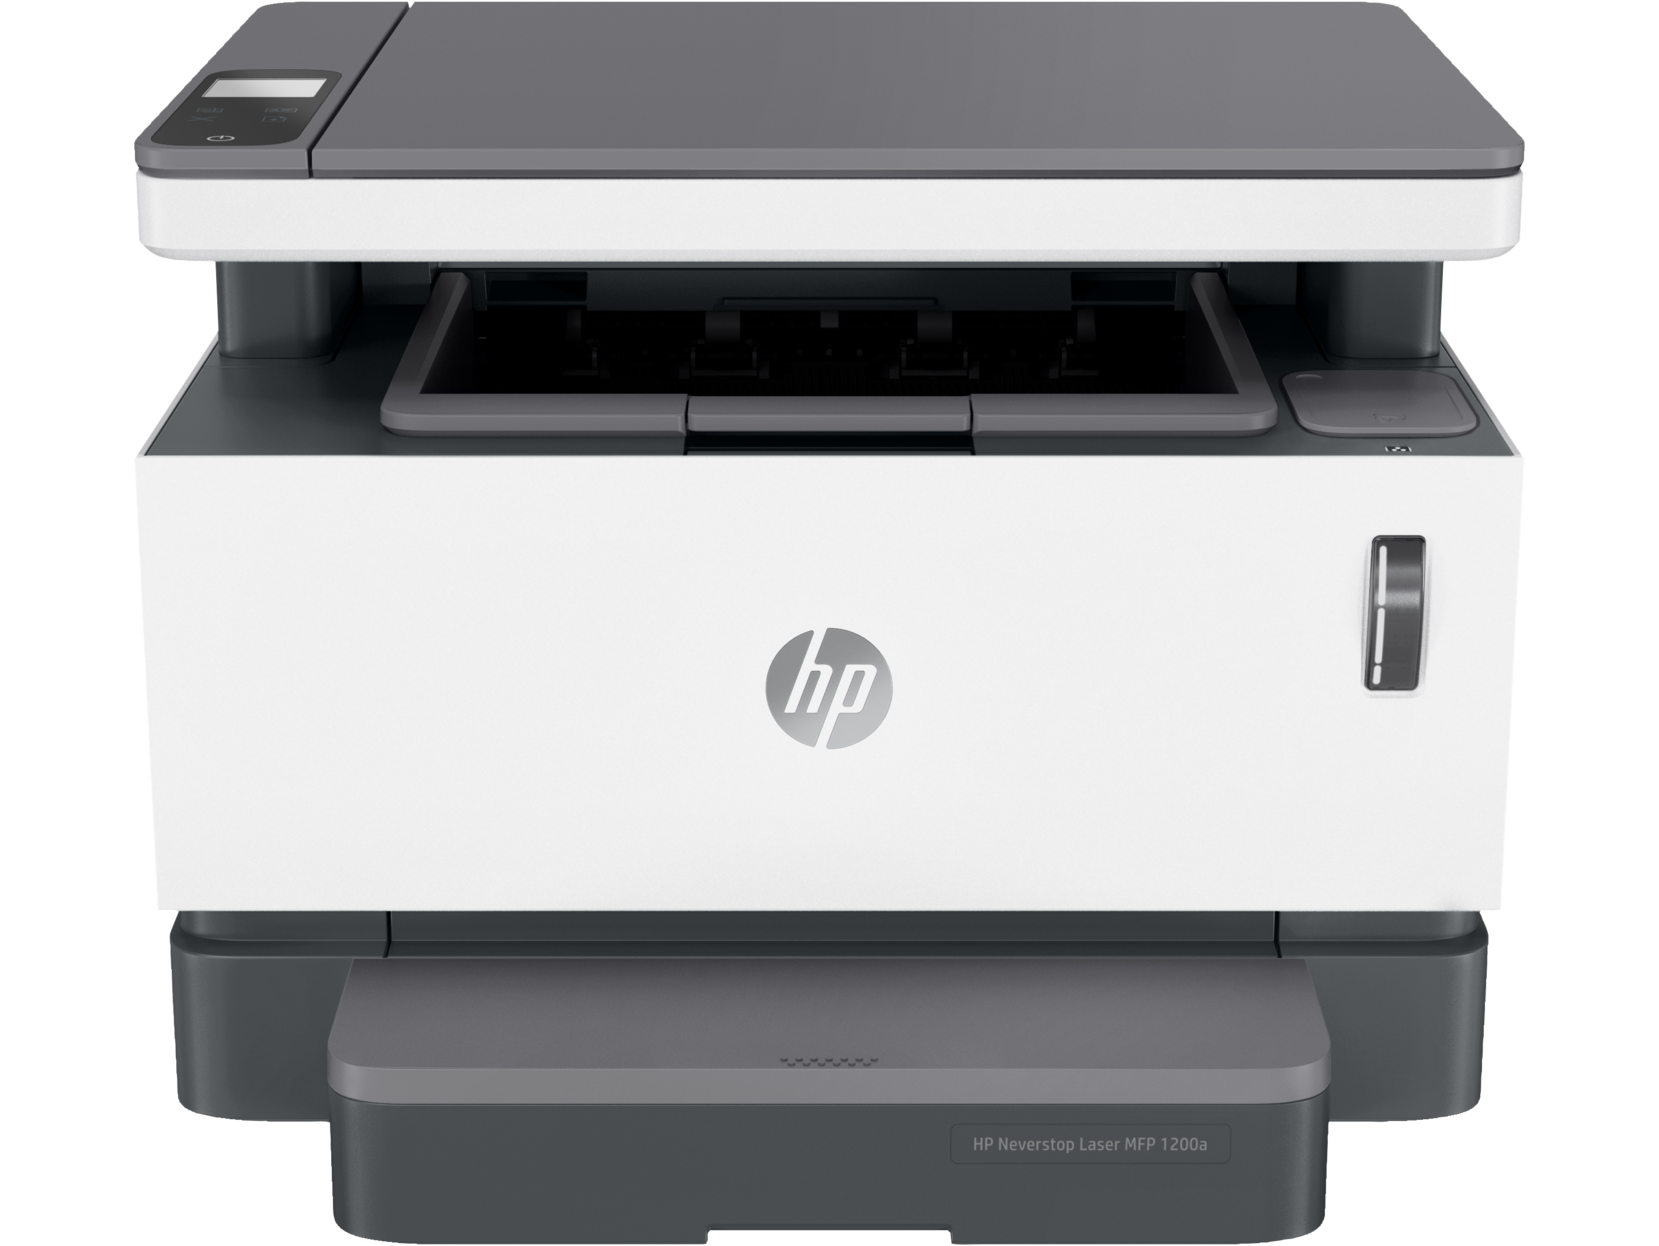 Máy in đen trắng HP Neverstop Laser 1200a (in, scan, copy), tặng thêm hộp mực tương thích 103A